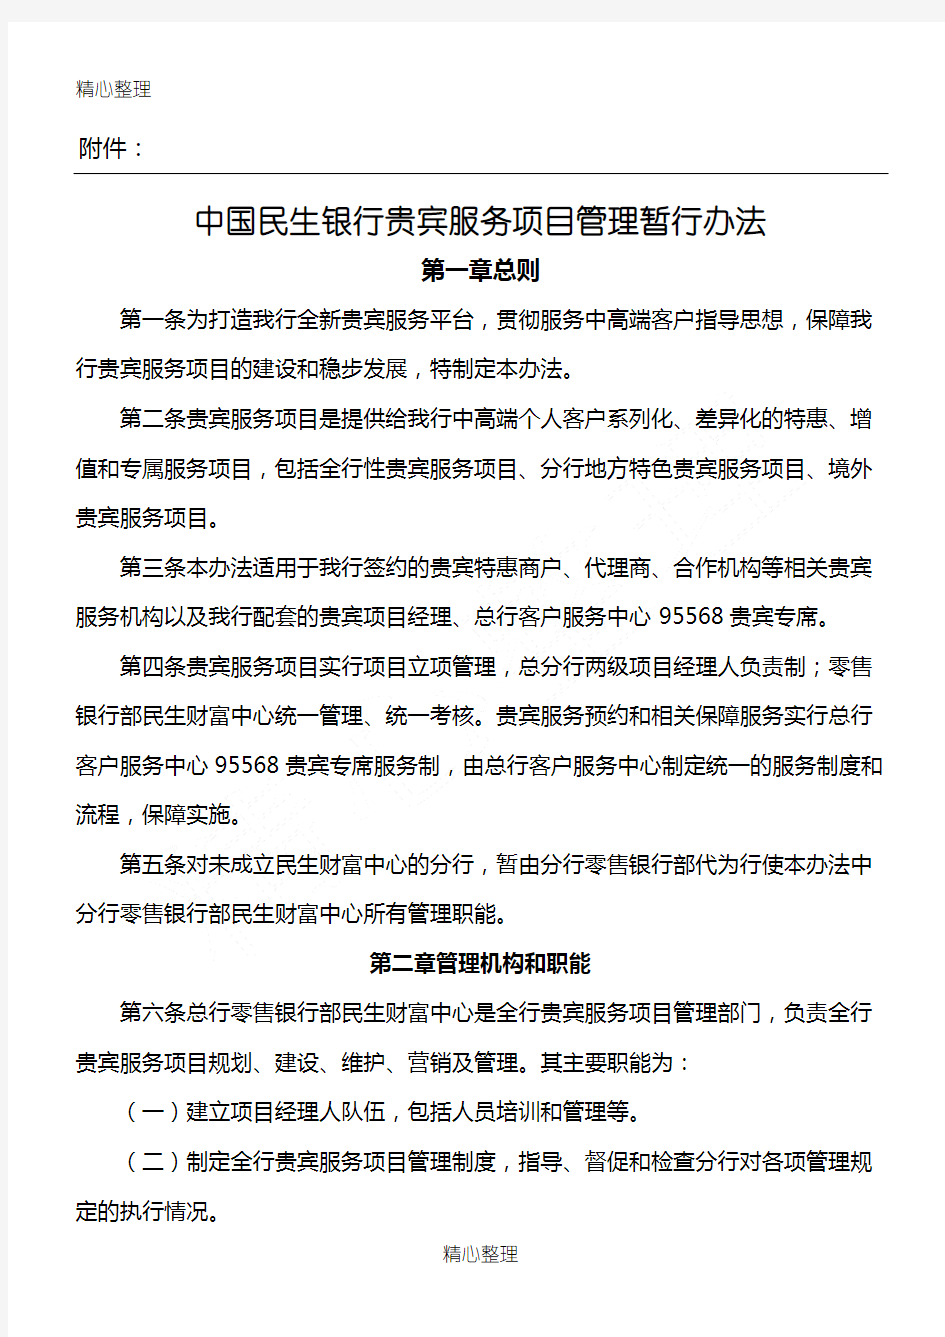 中国民生银行贵宾服务项目管理暂行办法